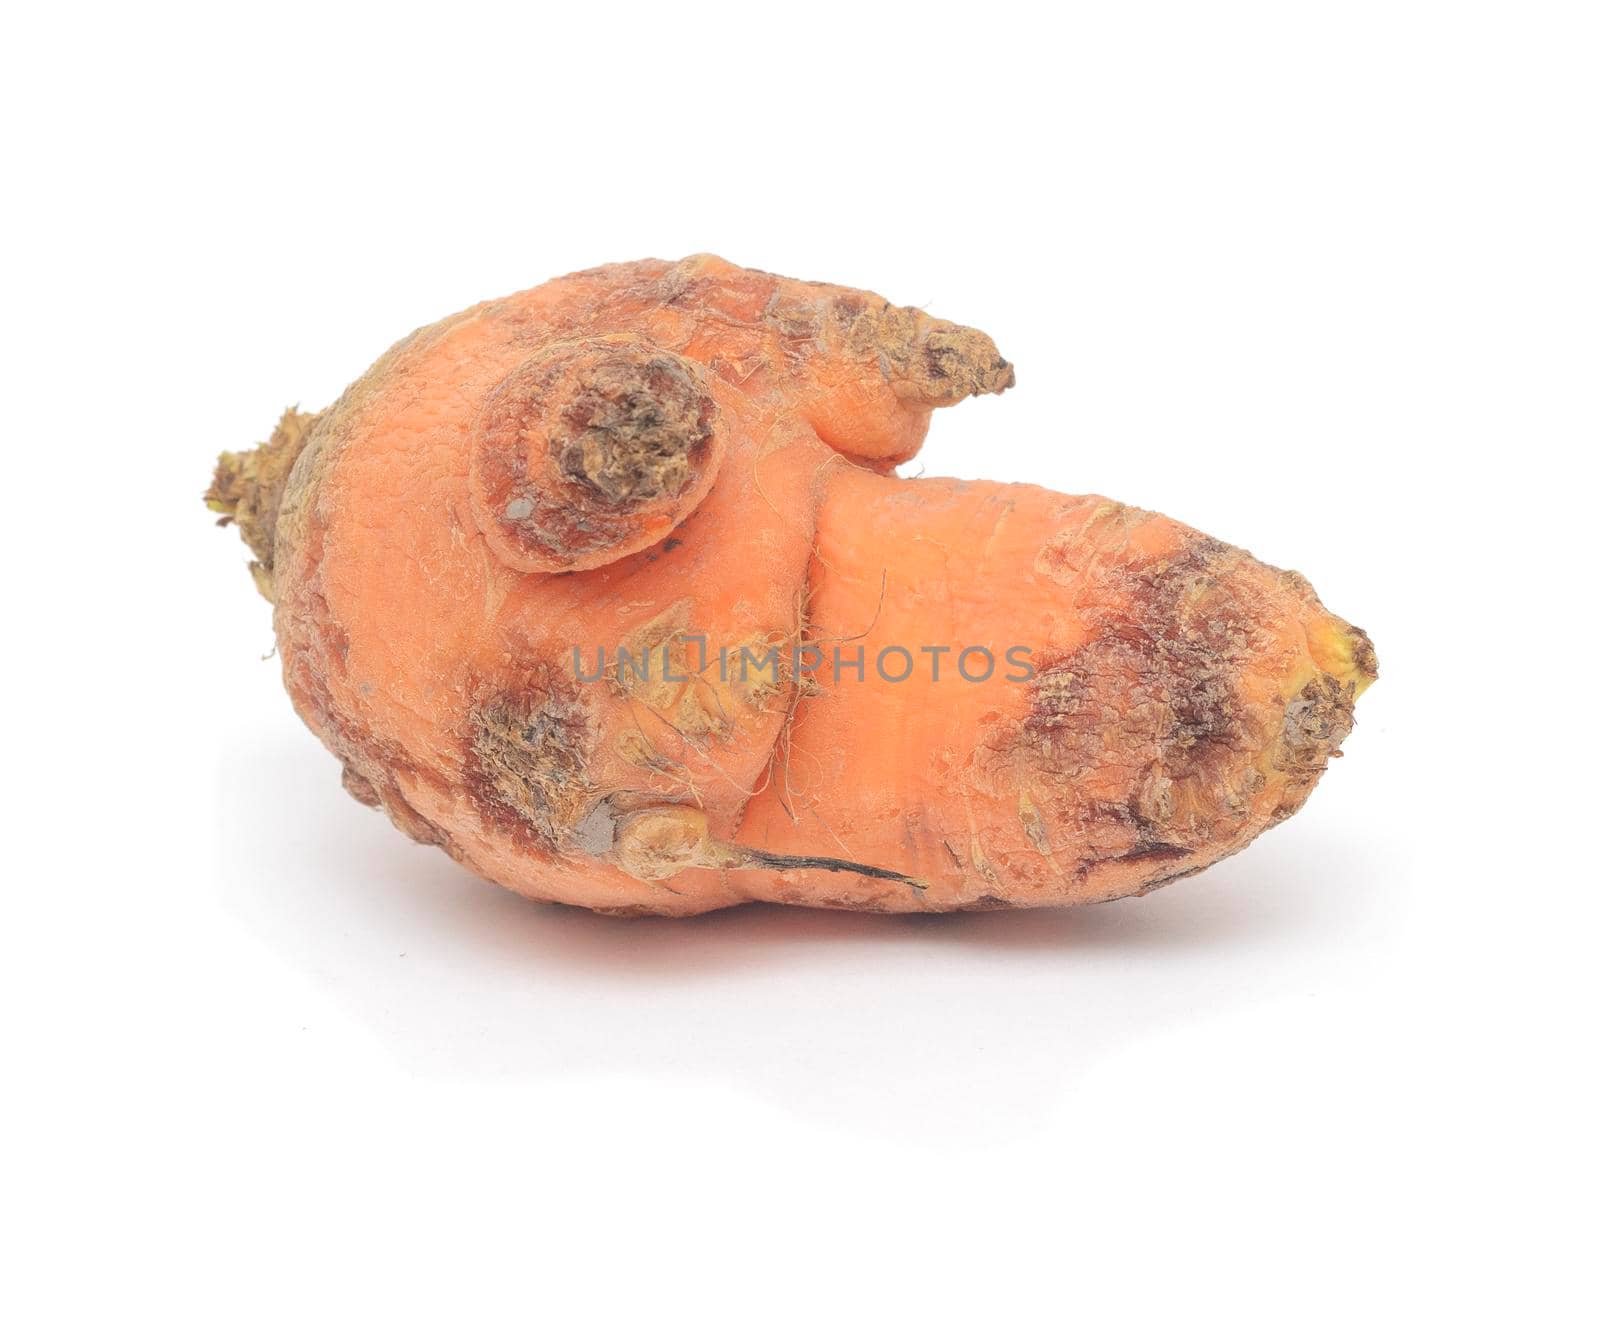 Ugly wringled carrot isolated on white background.